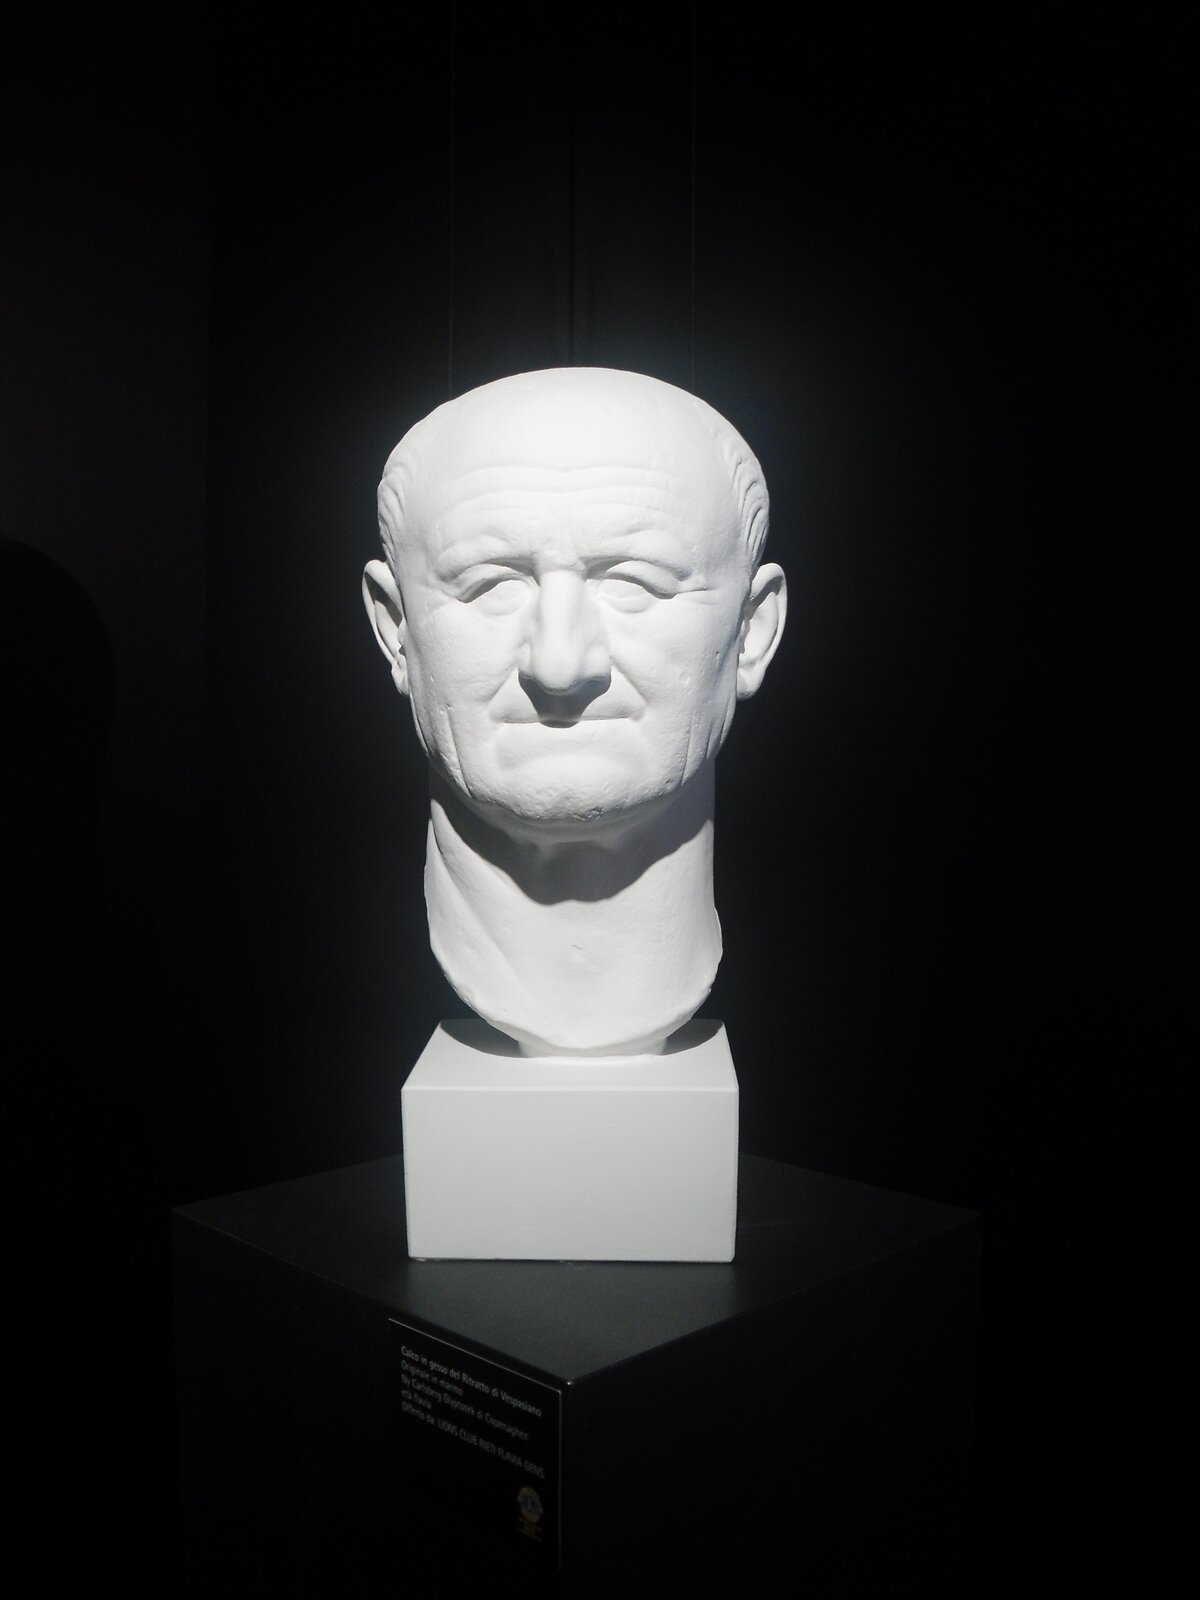 Ilustracja przedstawia gipsowy odlew popiersia Wespezjana, który znajduje się obecnie w Muzeum archeologicznym w Rieti. Starszy, łysiejący mężczyzna. Miał zmarszczki na twarzy, które zostały wyeksponowane przez artystę.